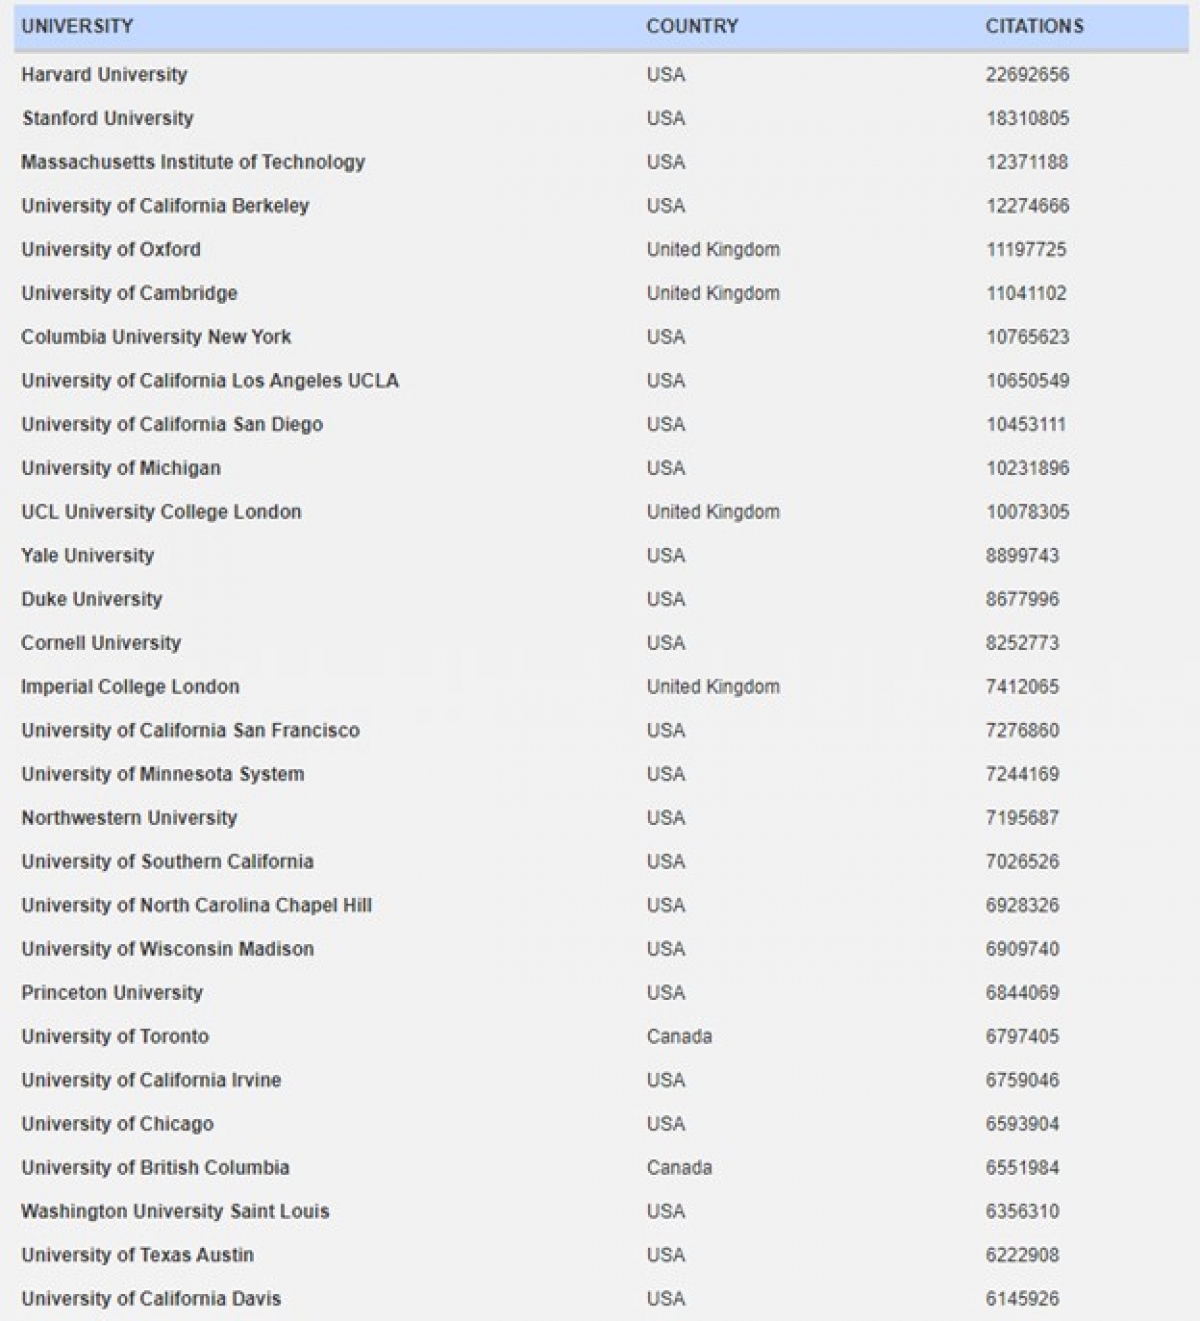 Top 30 trường đại học hàng đầu thế giới được xếp hạng theo hồ sơ khoa học Google Scholar - Top Universities by Citations in Top Google Scholar profiles (Nguồn: https://www.webometrics.info/en/transparent)